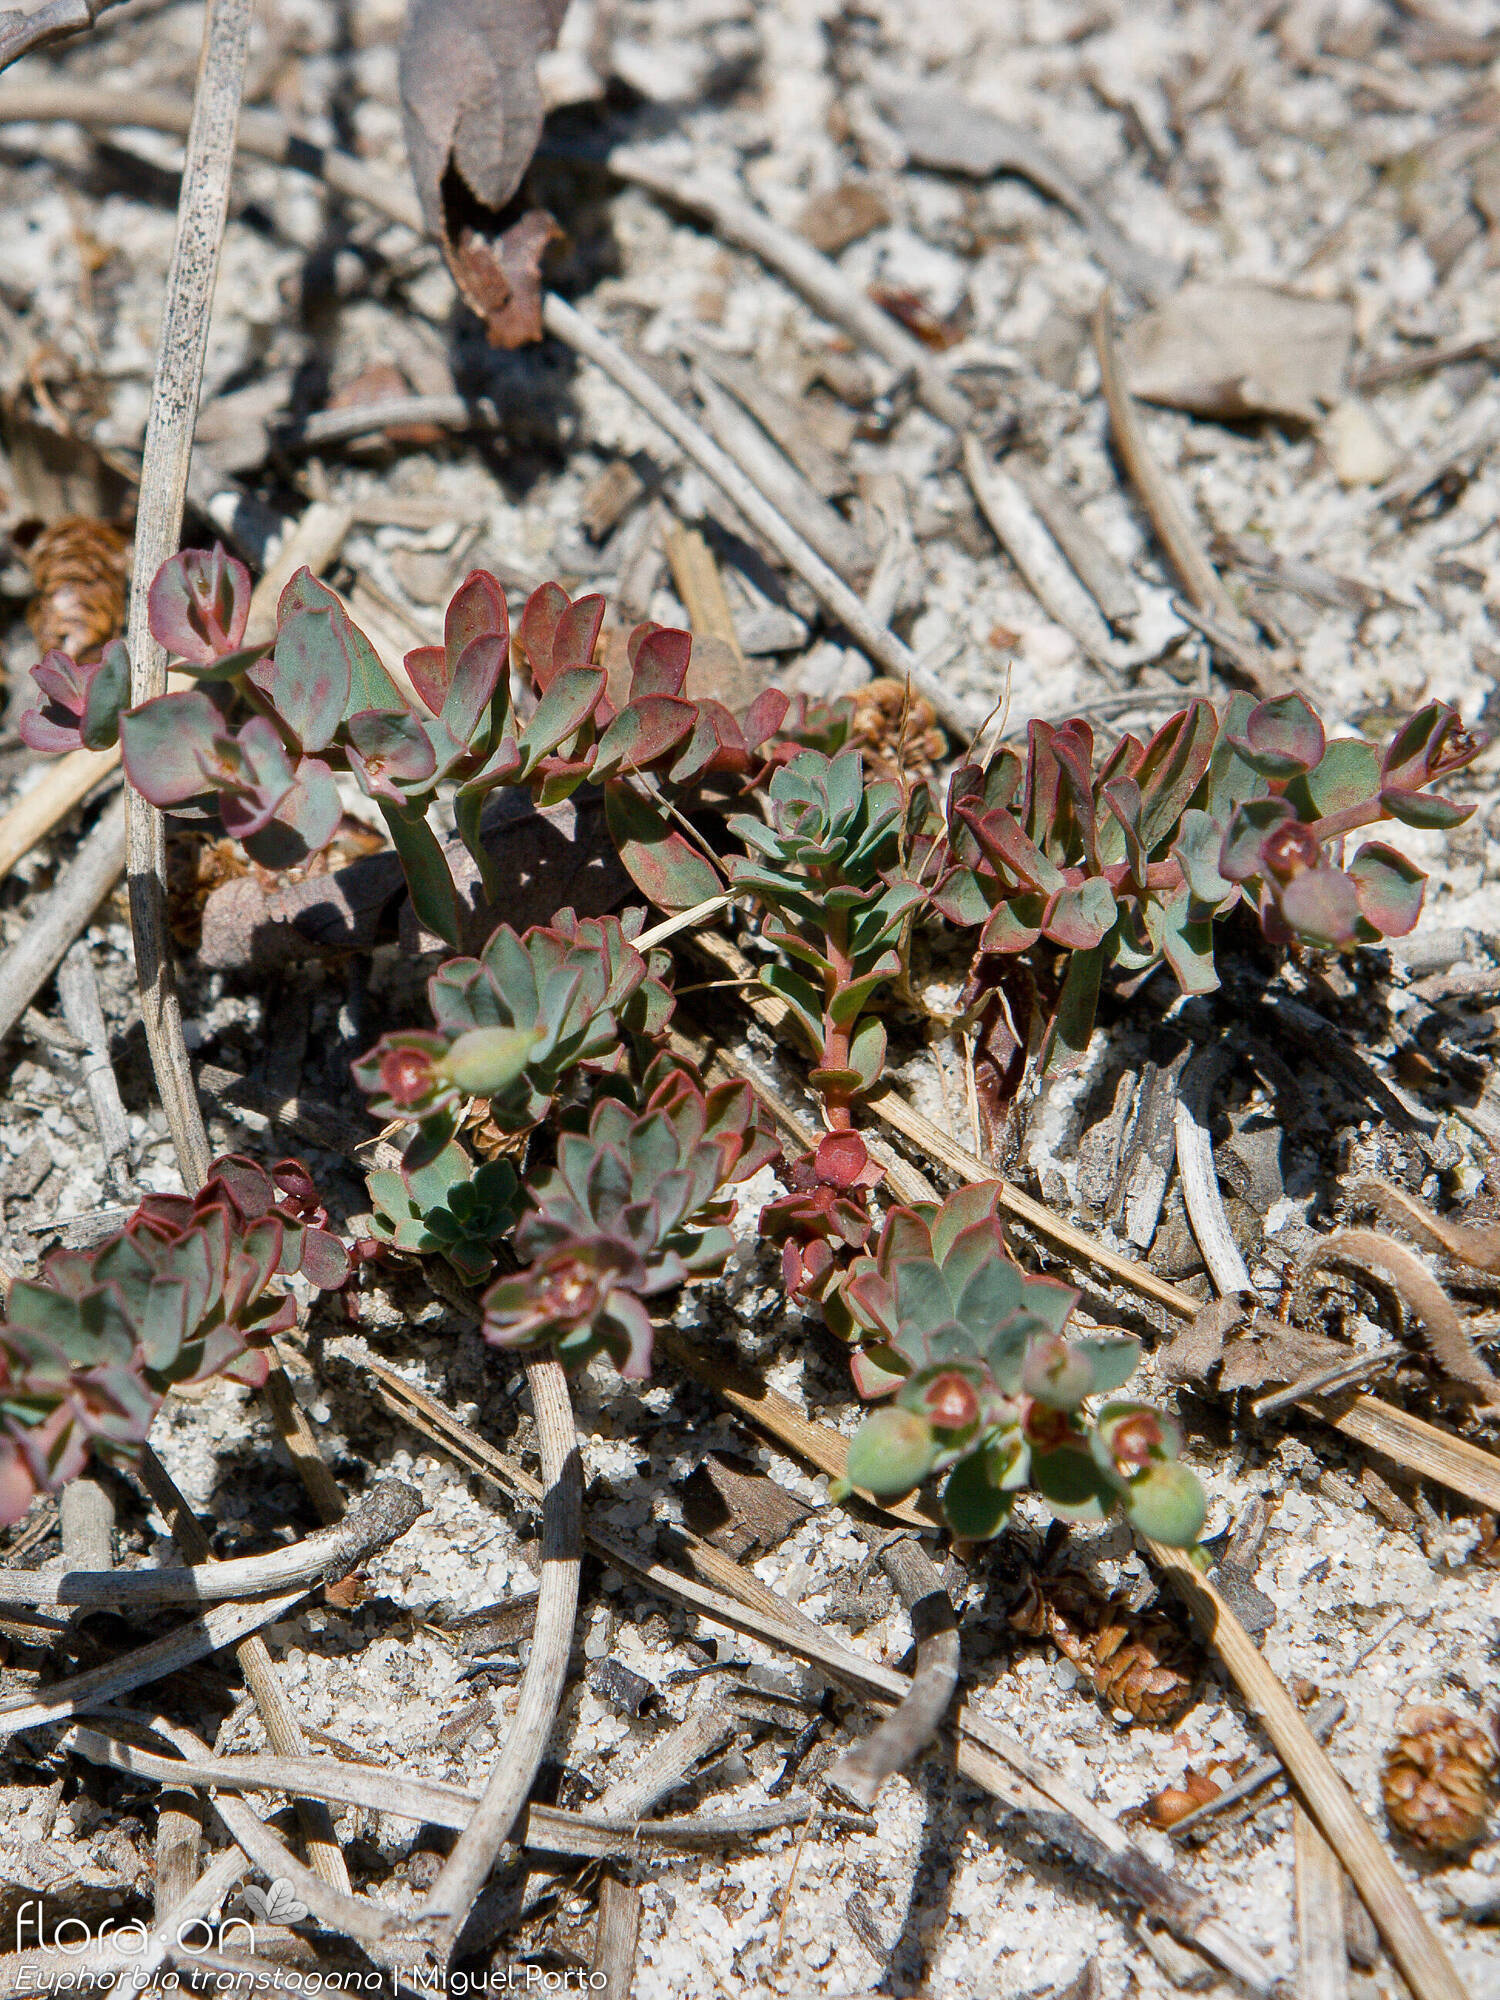 Euphorbia transtagana - Hábito | Miguel Porto; CC BY-NC 4.0